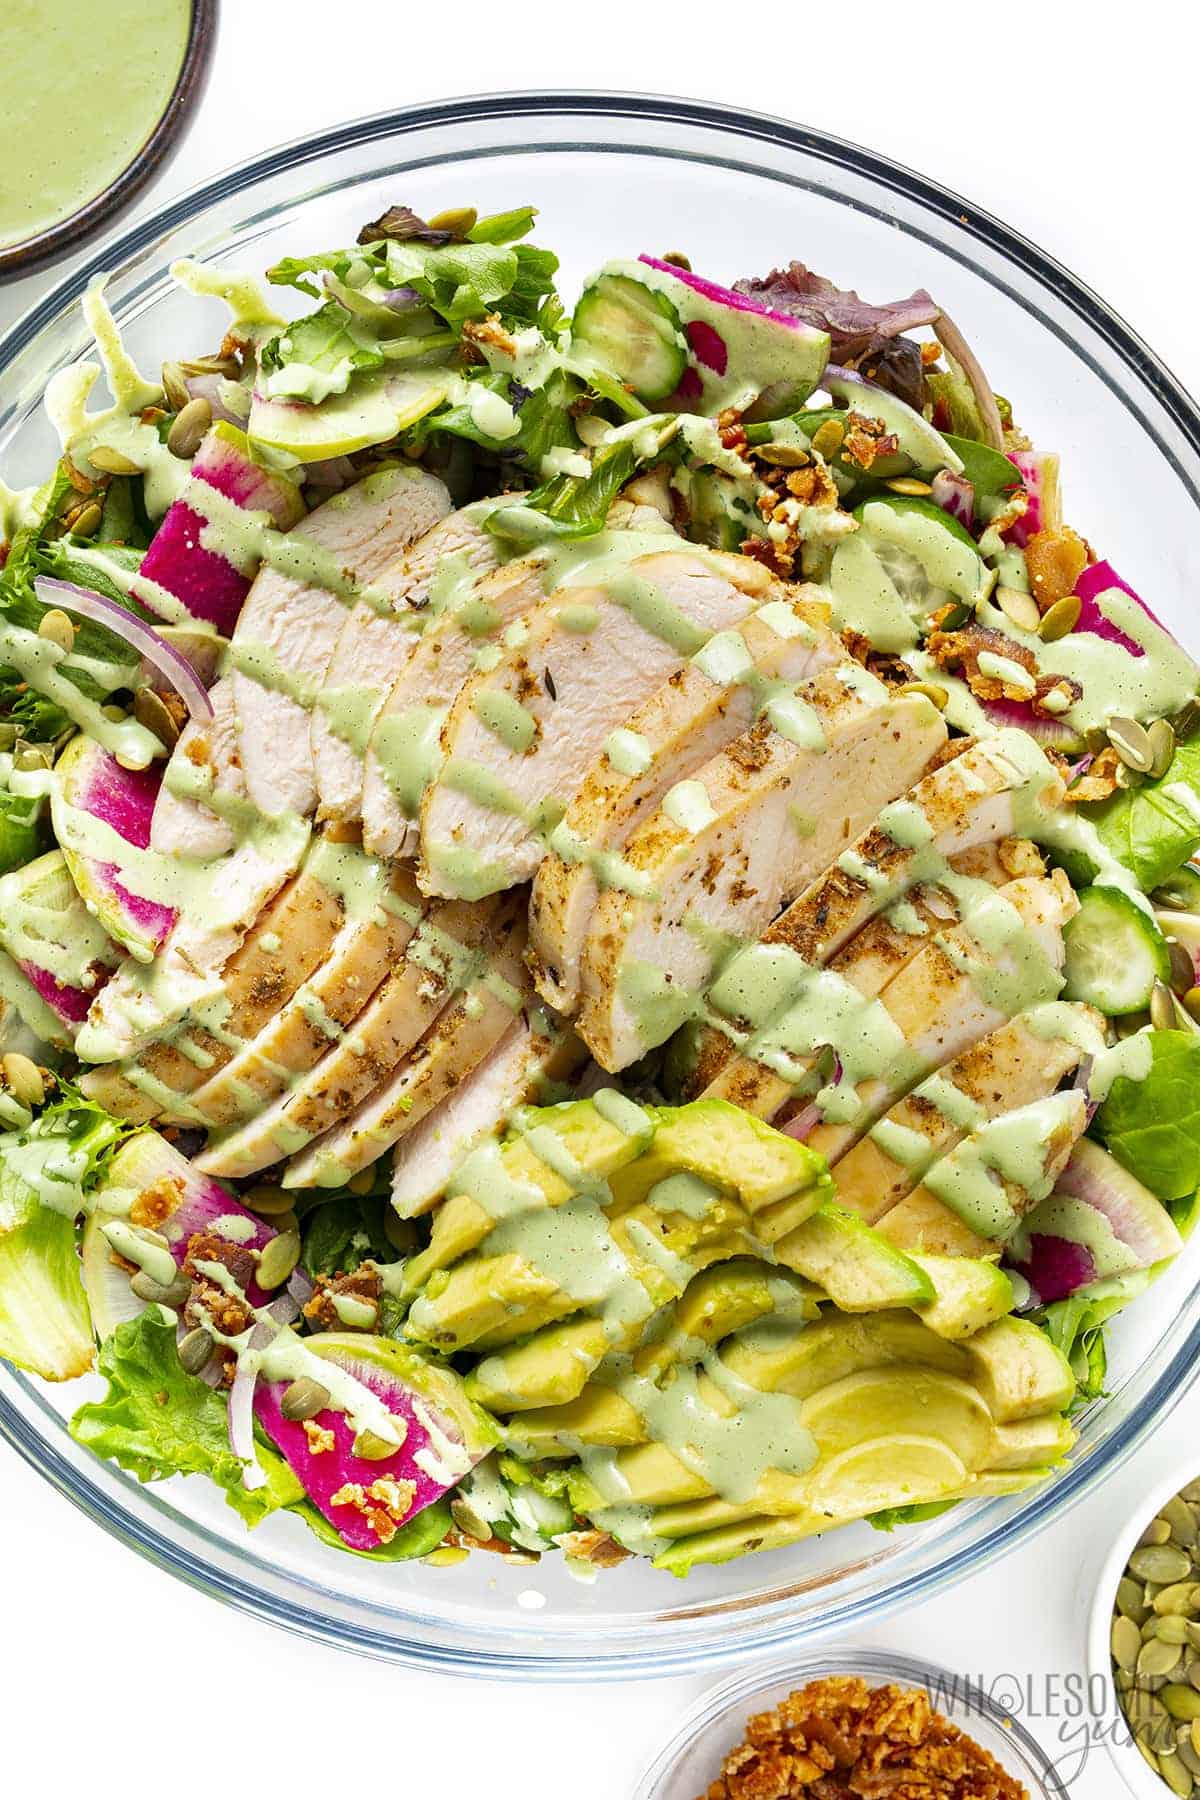 Green goddess chicken salad with garnishes in bowls